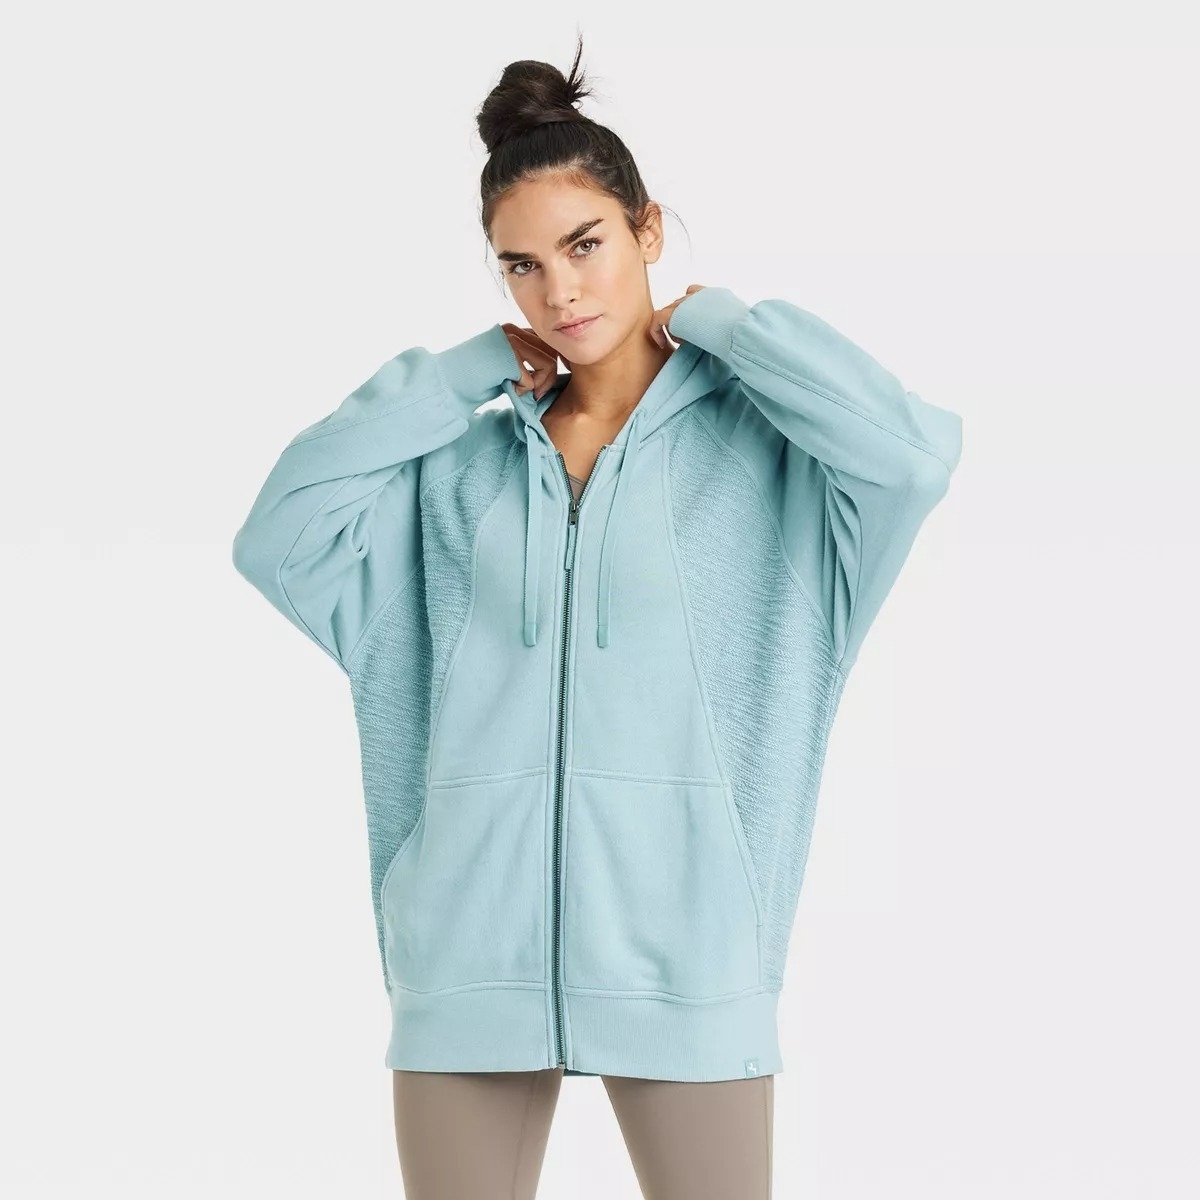 light blue zip up hoodie on model